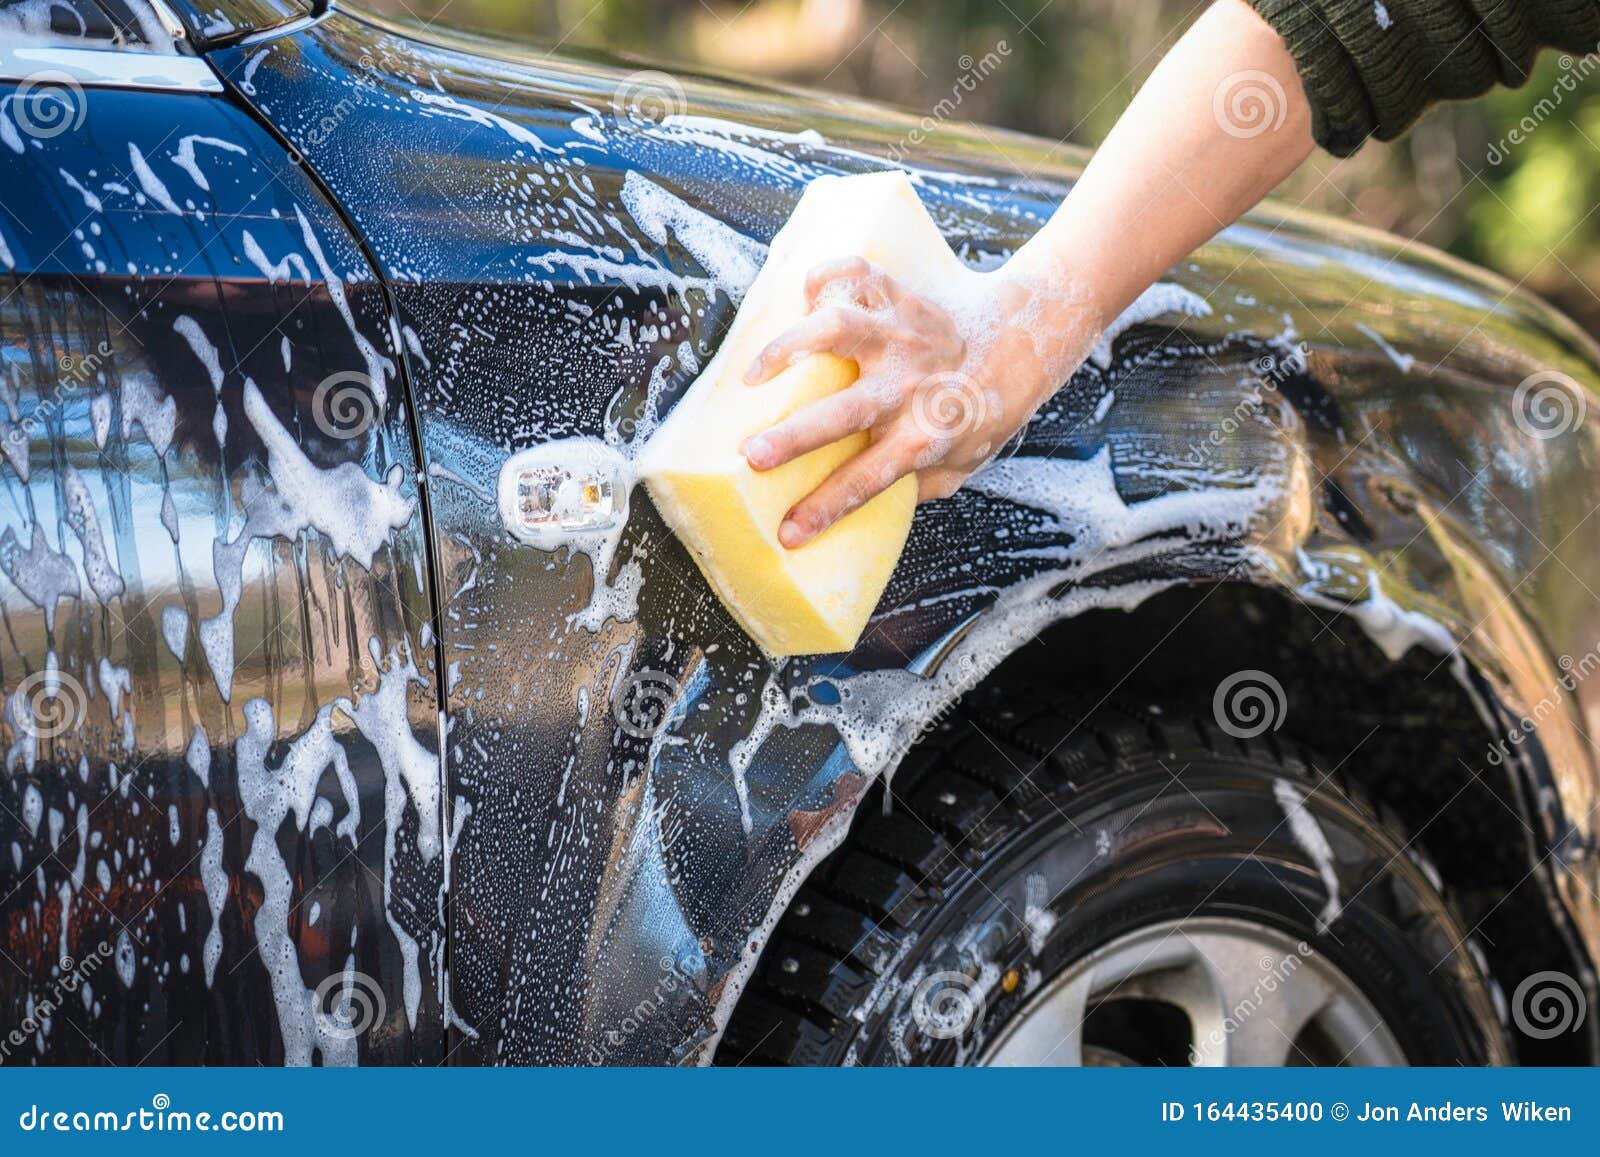 Когда можно мыть машину. Губка для мойки автомобиля. Мытье машины. Губка для мытья машины. Двухфазная мойка автомобиля.